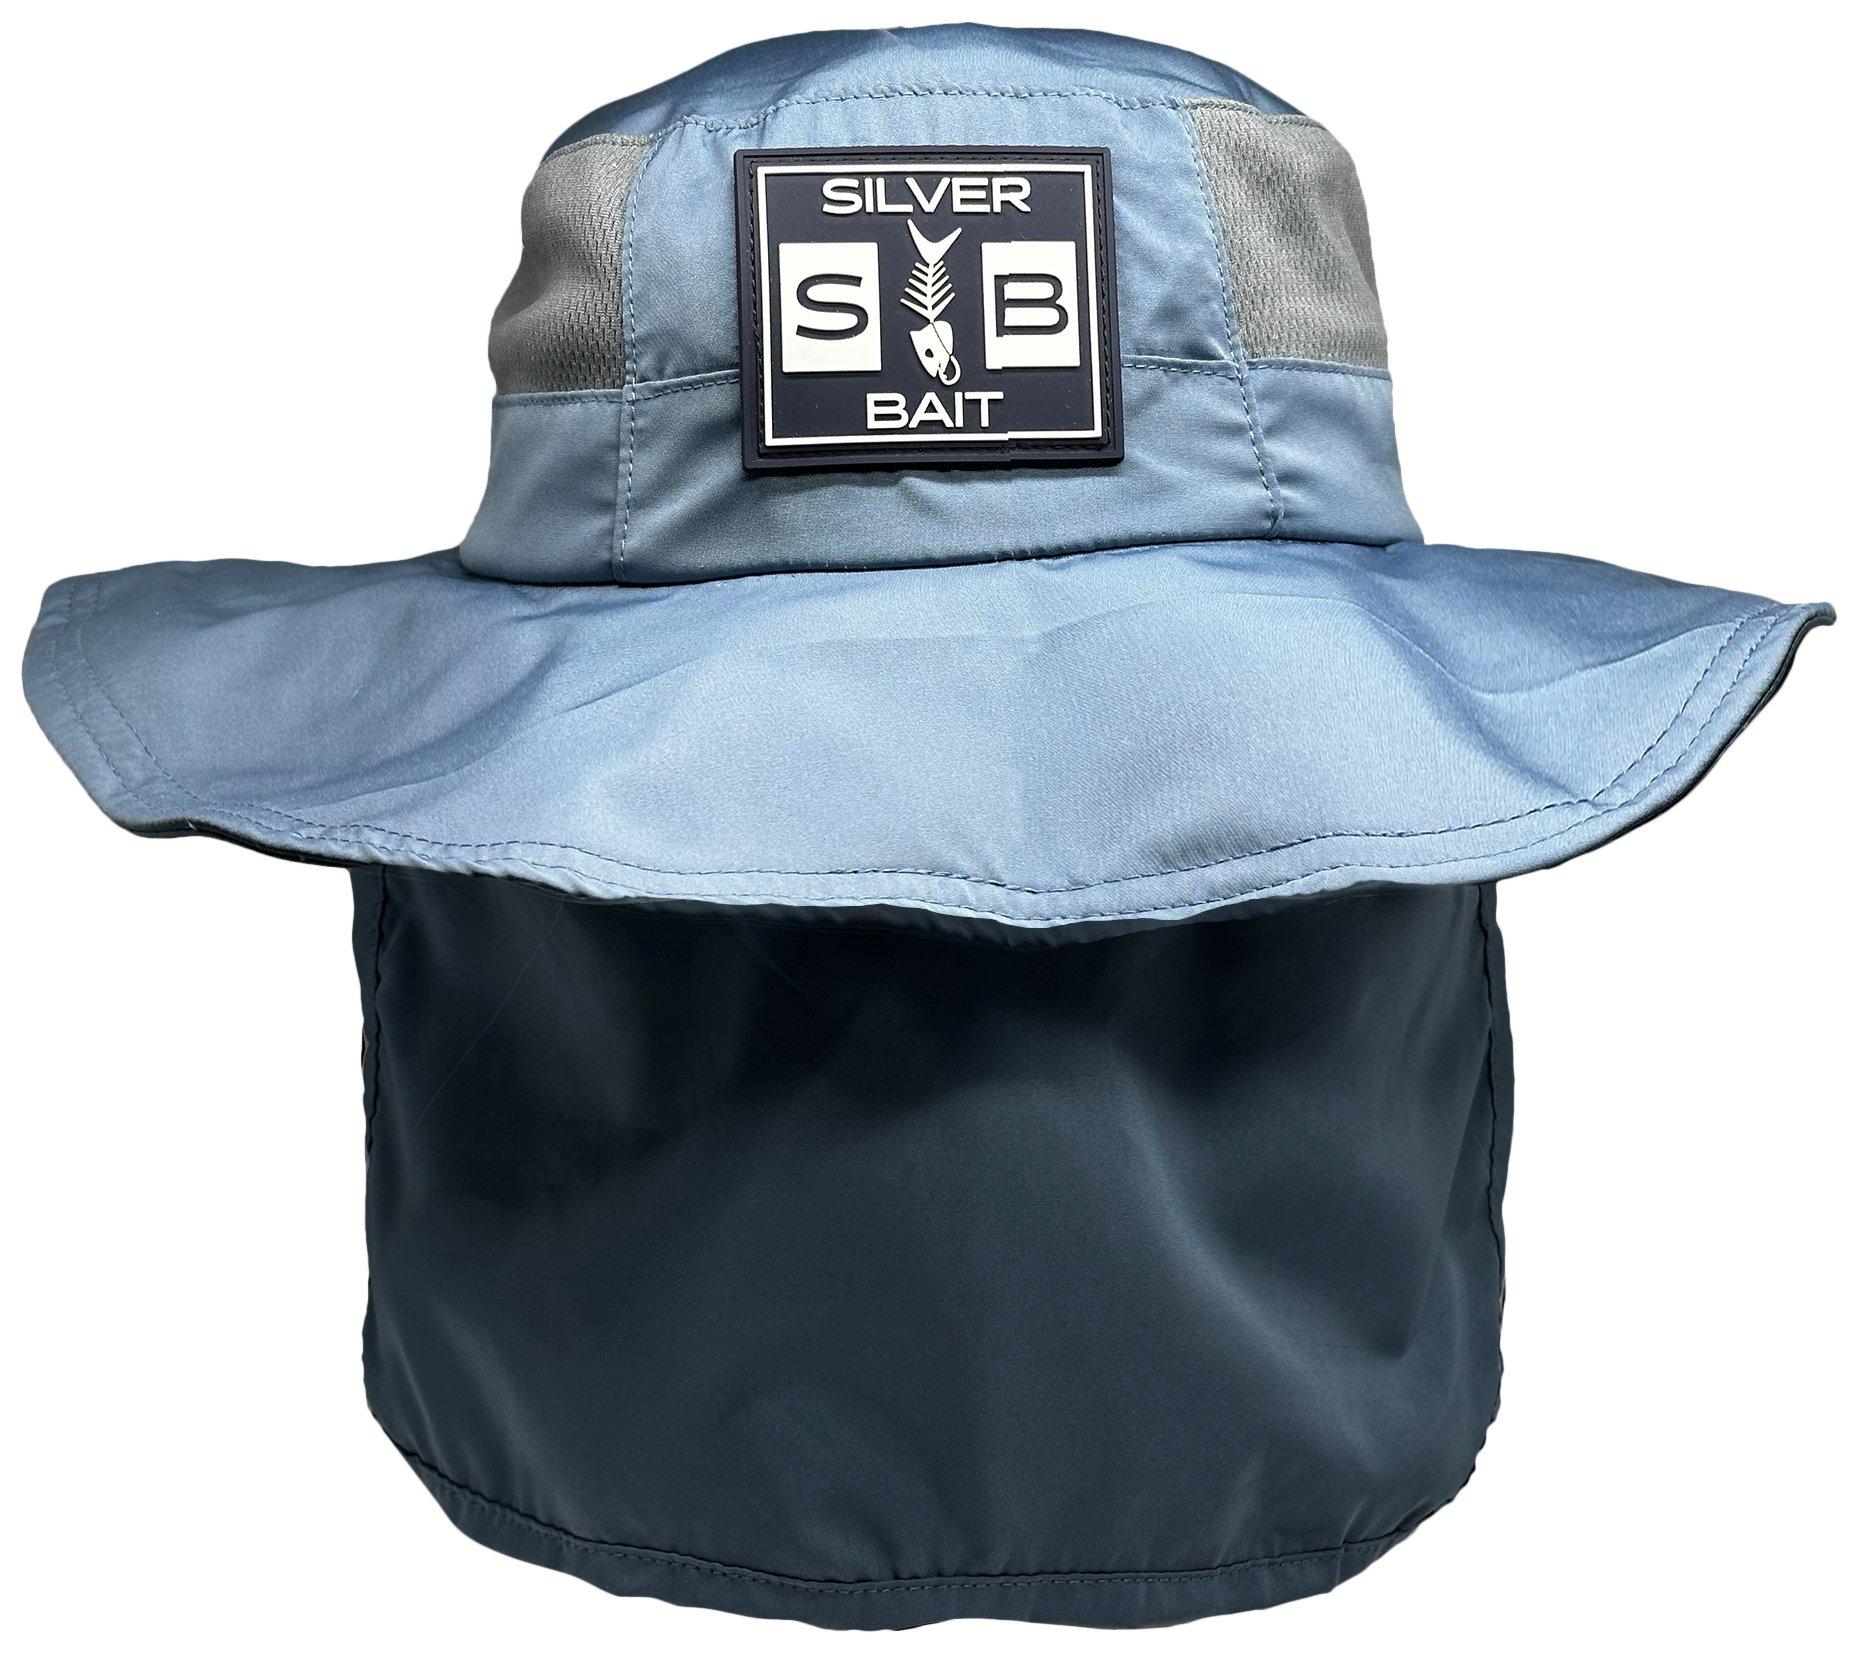 Reel Legends Mens Solid Neck Flap Boonie Outdoor Hat